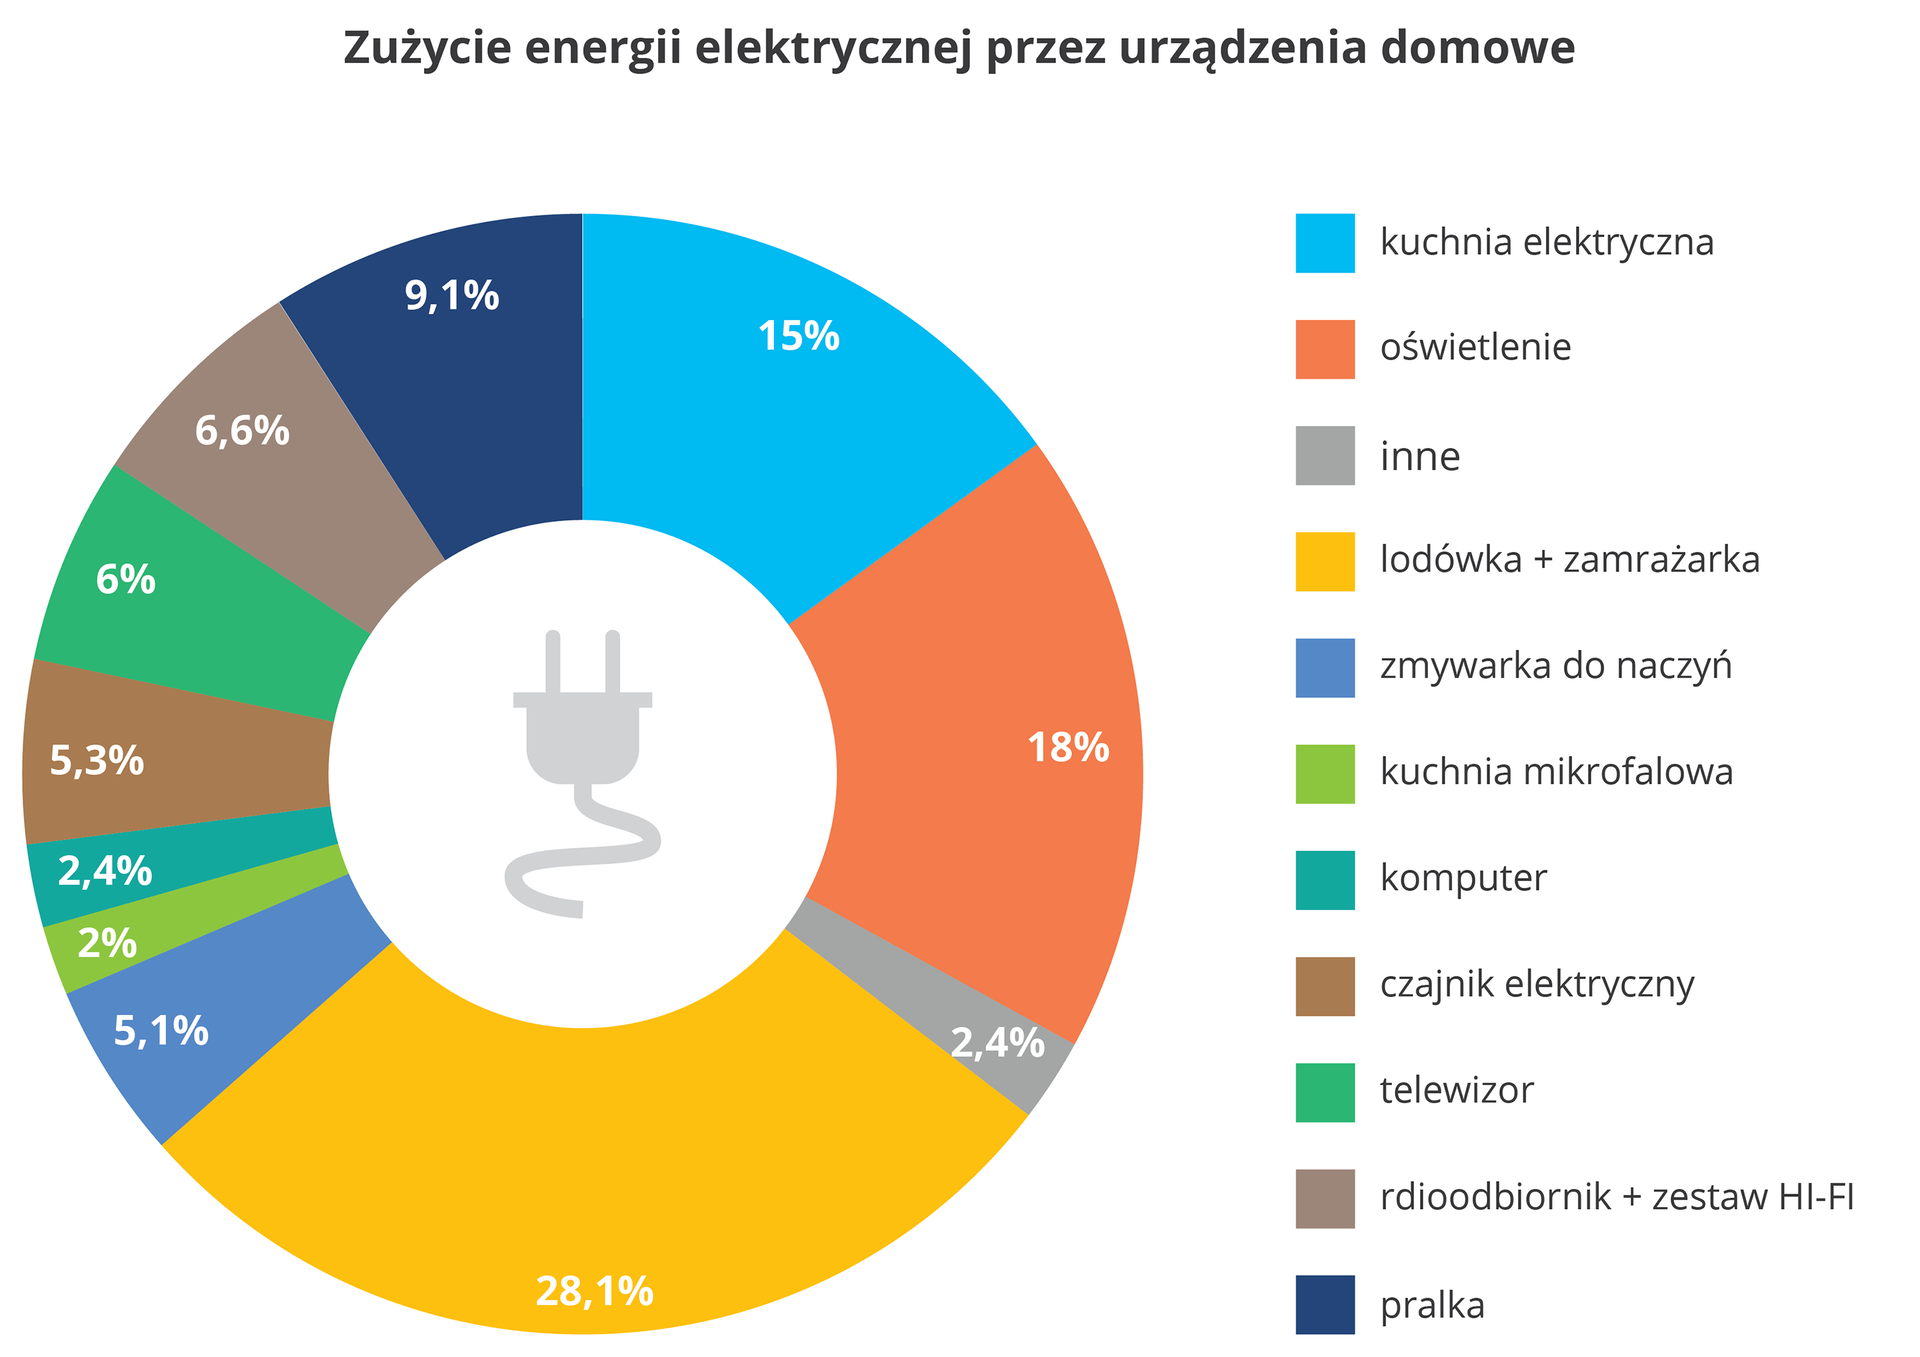 Diagram kołowy przedstawia zużycie energii w domu przez różne urządzenia w %. Najwięcej energii zużywa lodówka i zamrażarka, prawia 30%, oświetlenie - ok.18% i kuchnia elektryczna - 15%.